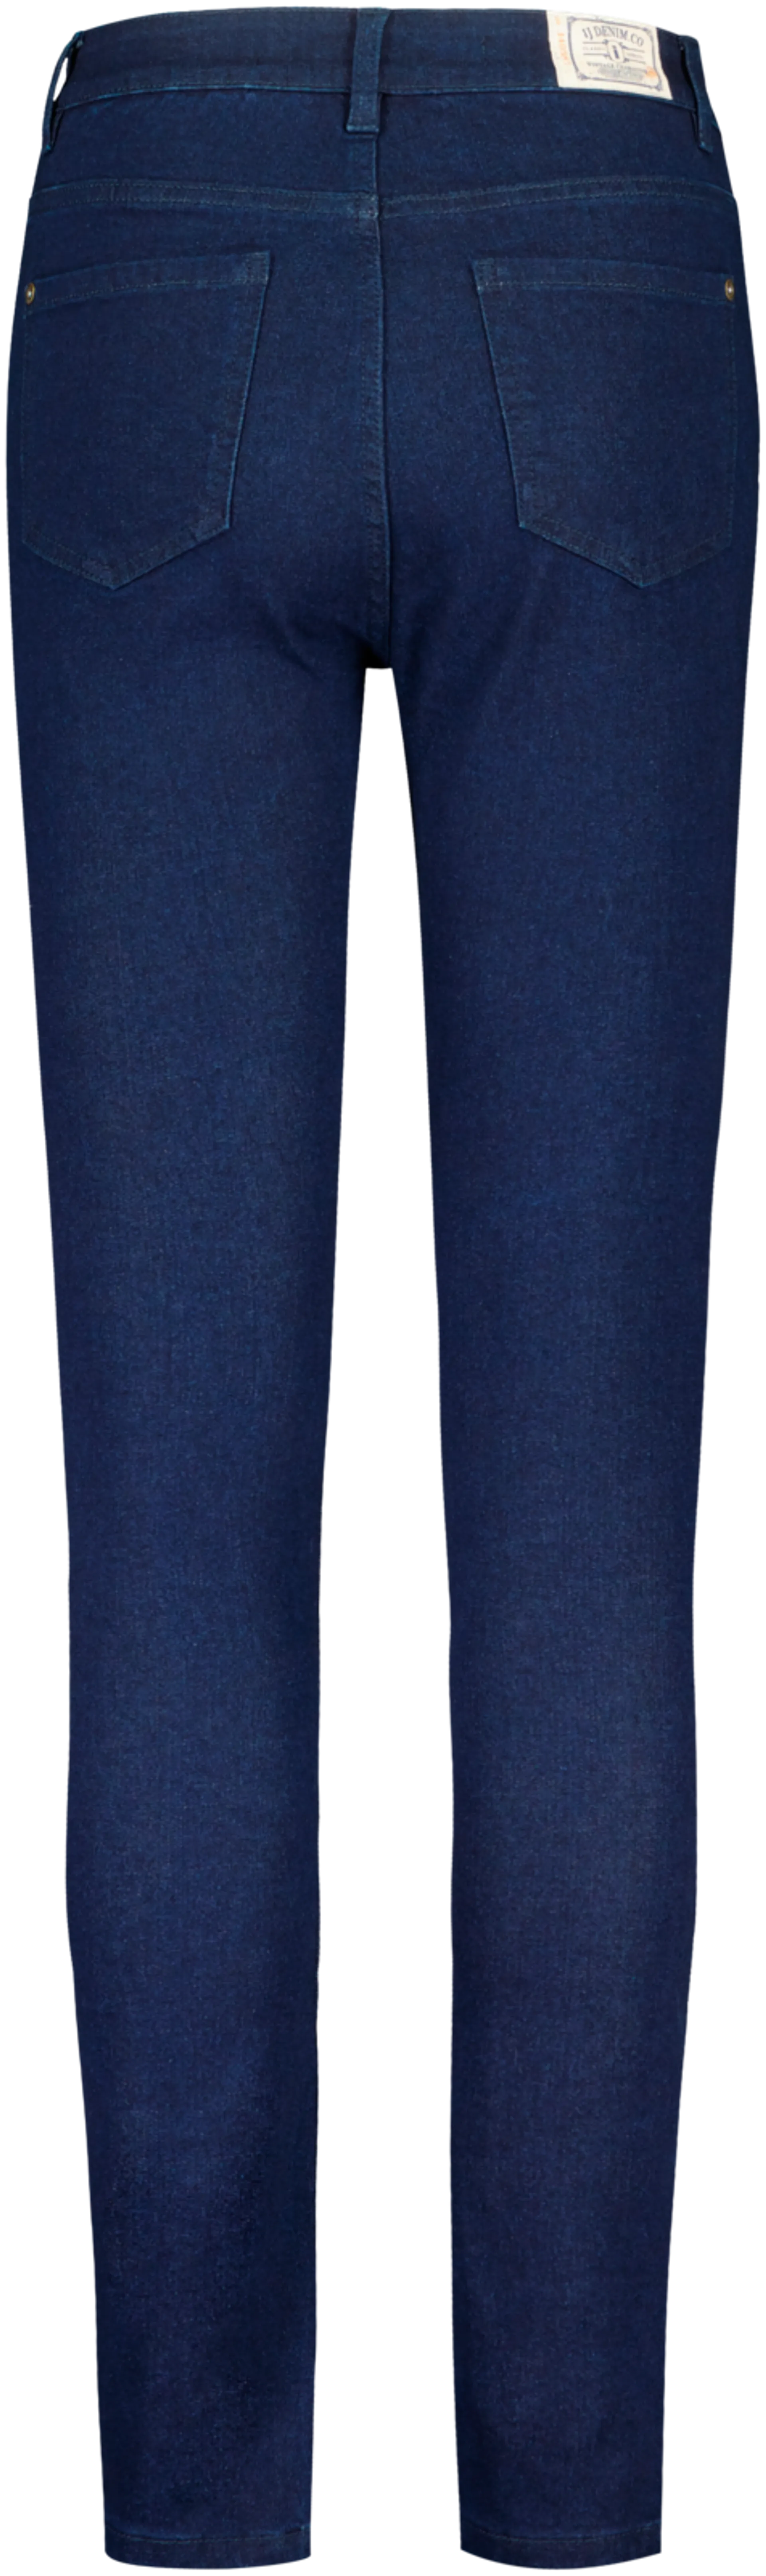 iJeans naisten farkut skinny fit NIJ3021012 - DARK BLUE DENIM - 2